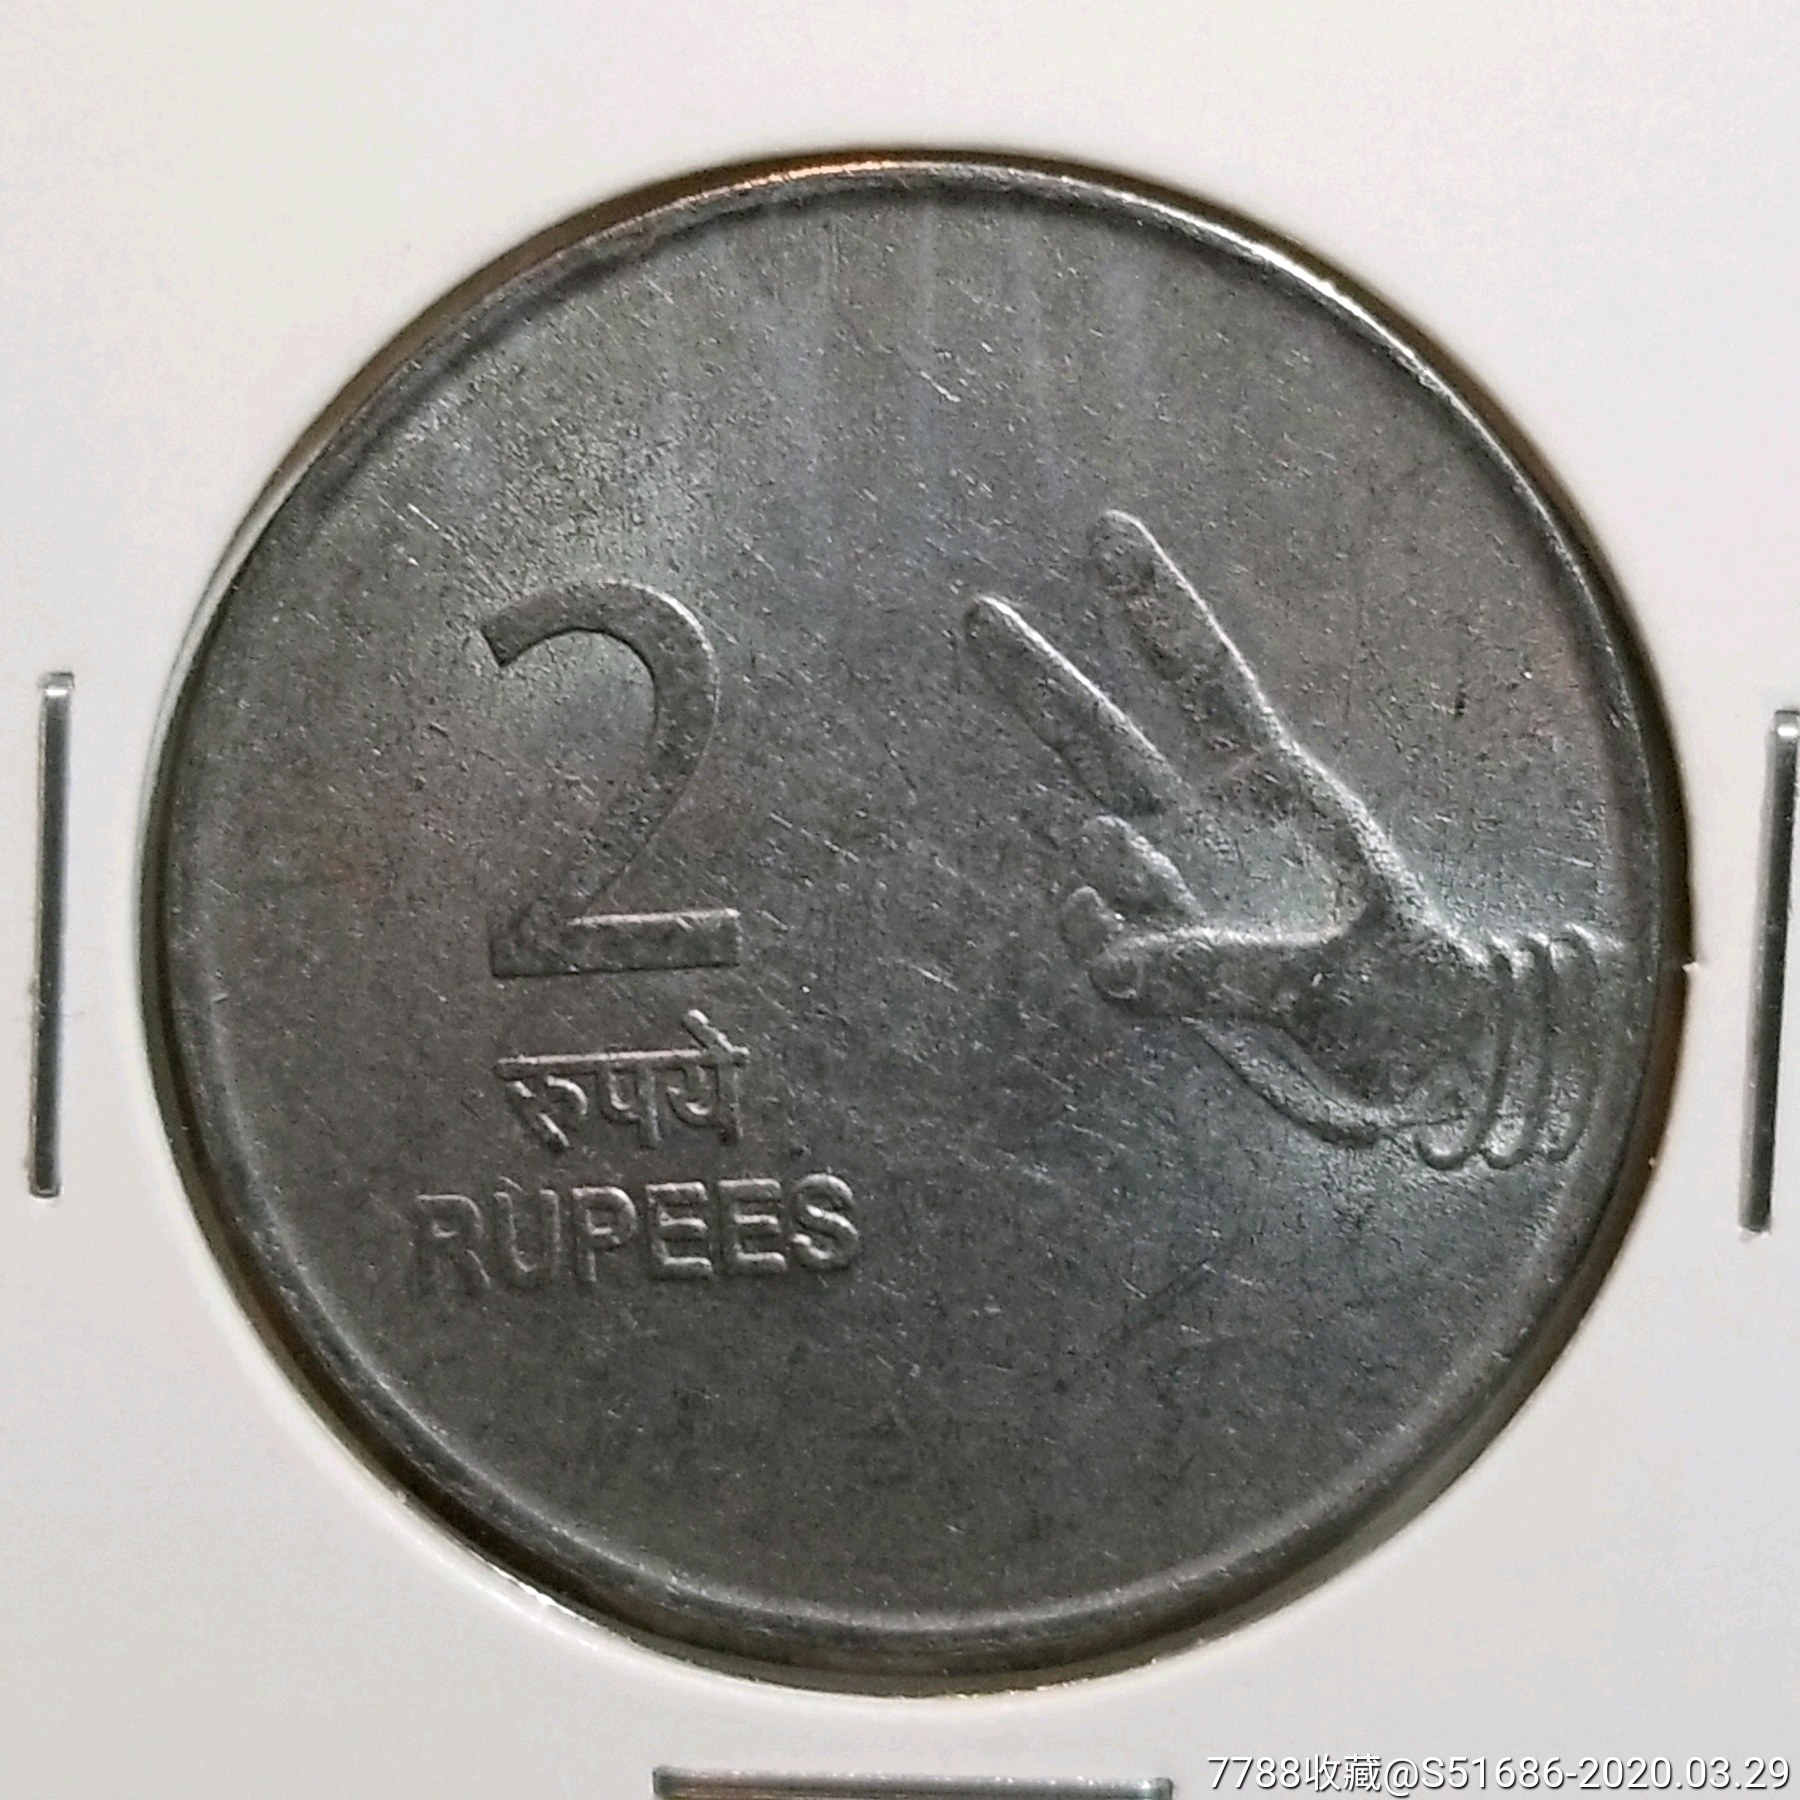 2009年印度5卢比纪念硬币英联邦60周年稀少-价格:20元-se82079203-外国钱币-零售-7788收藏__收藏热线